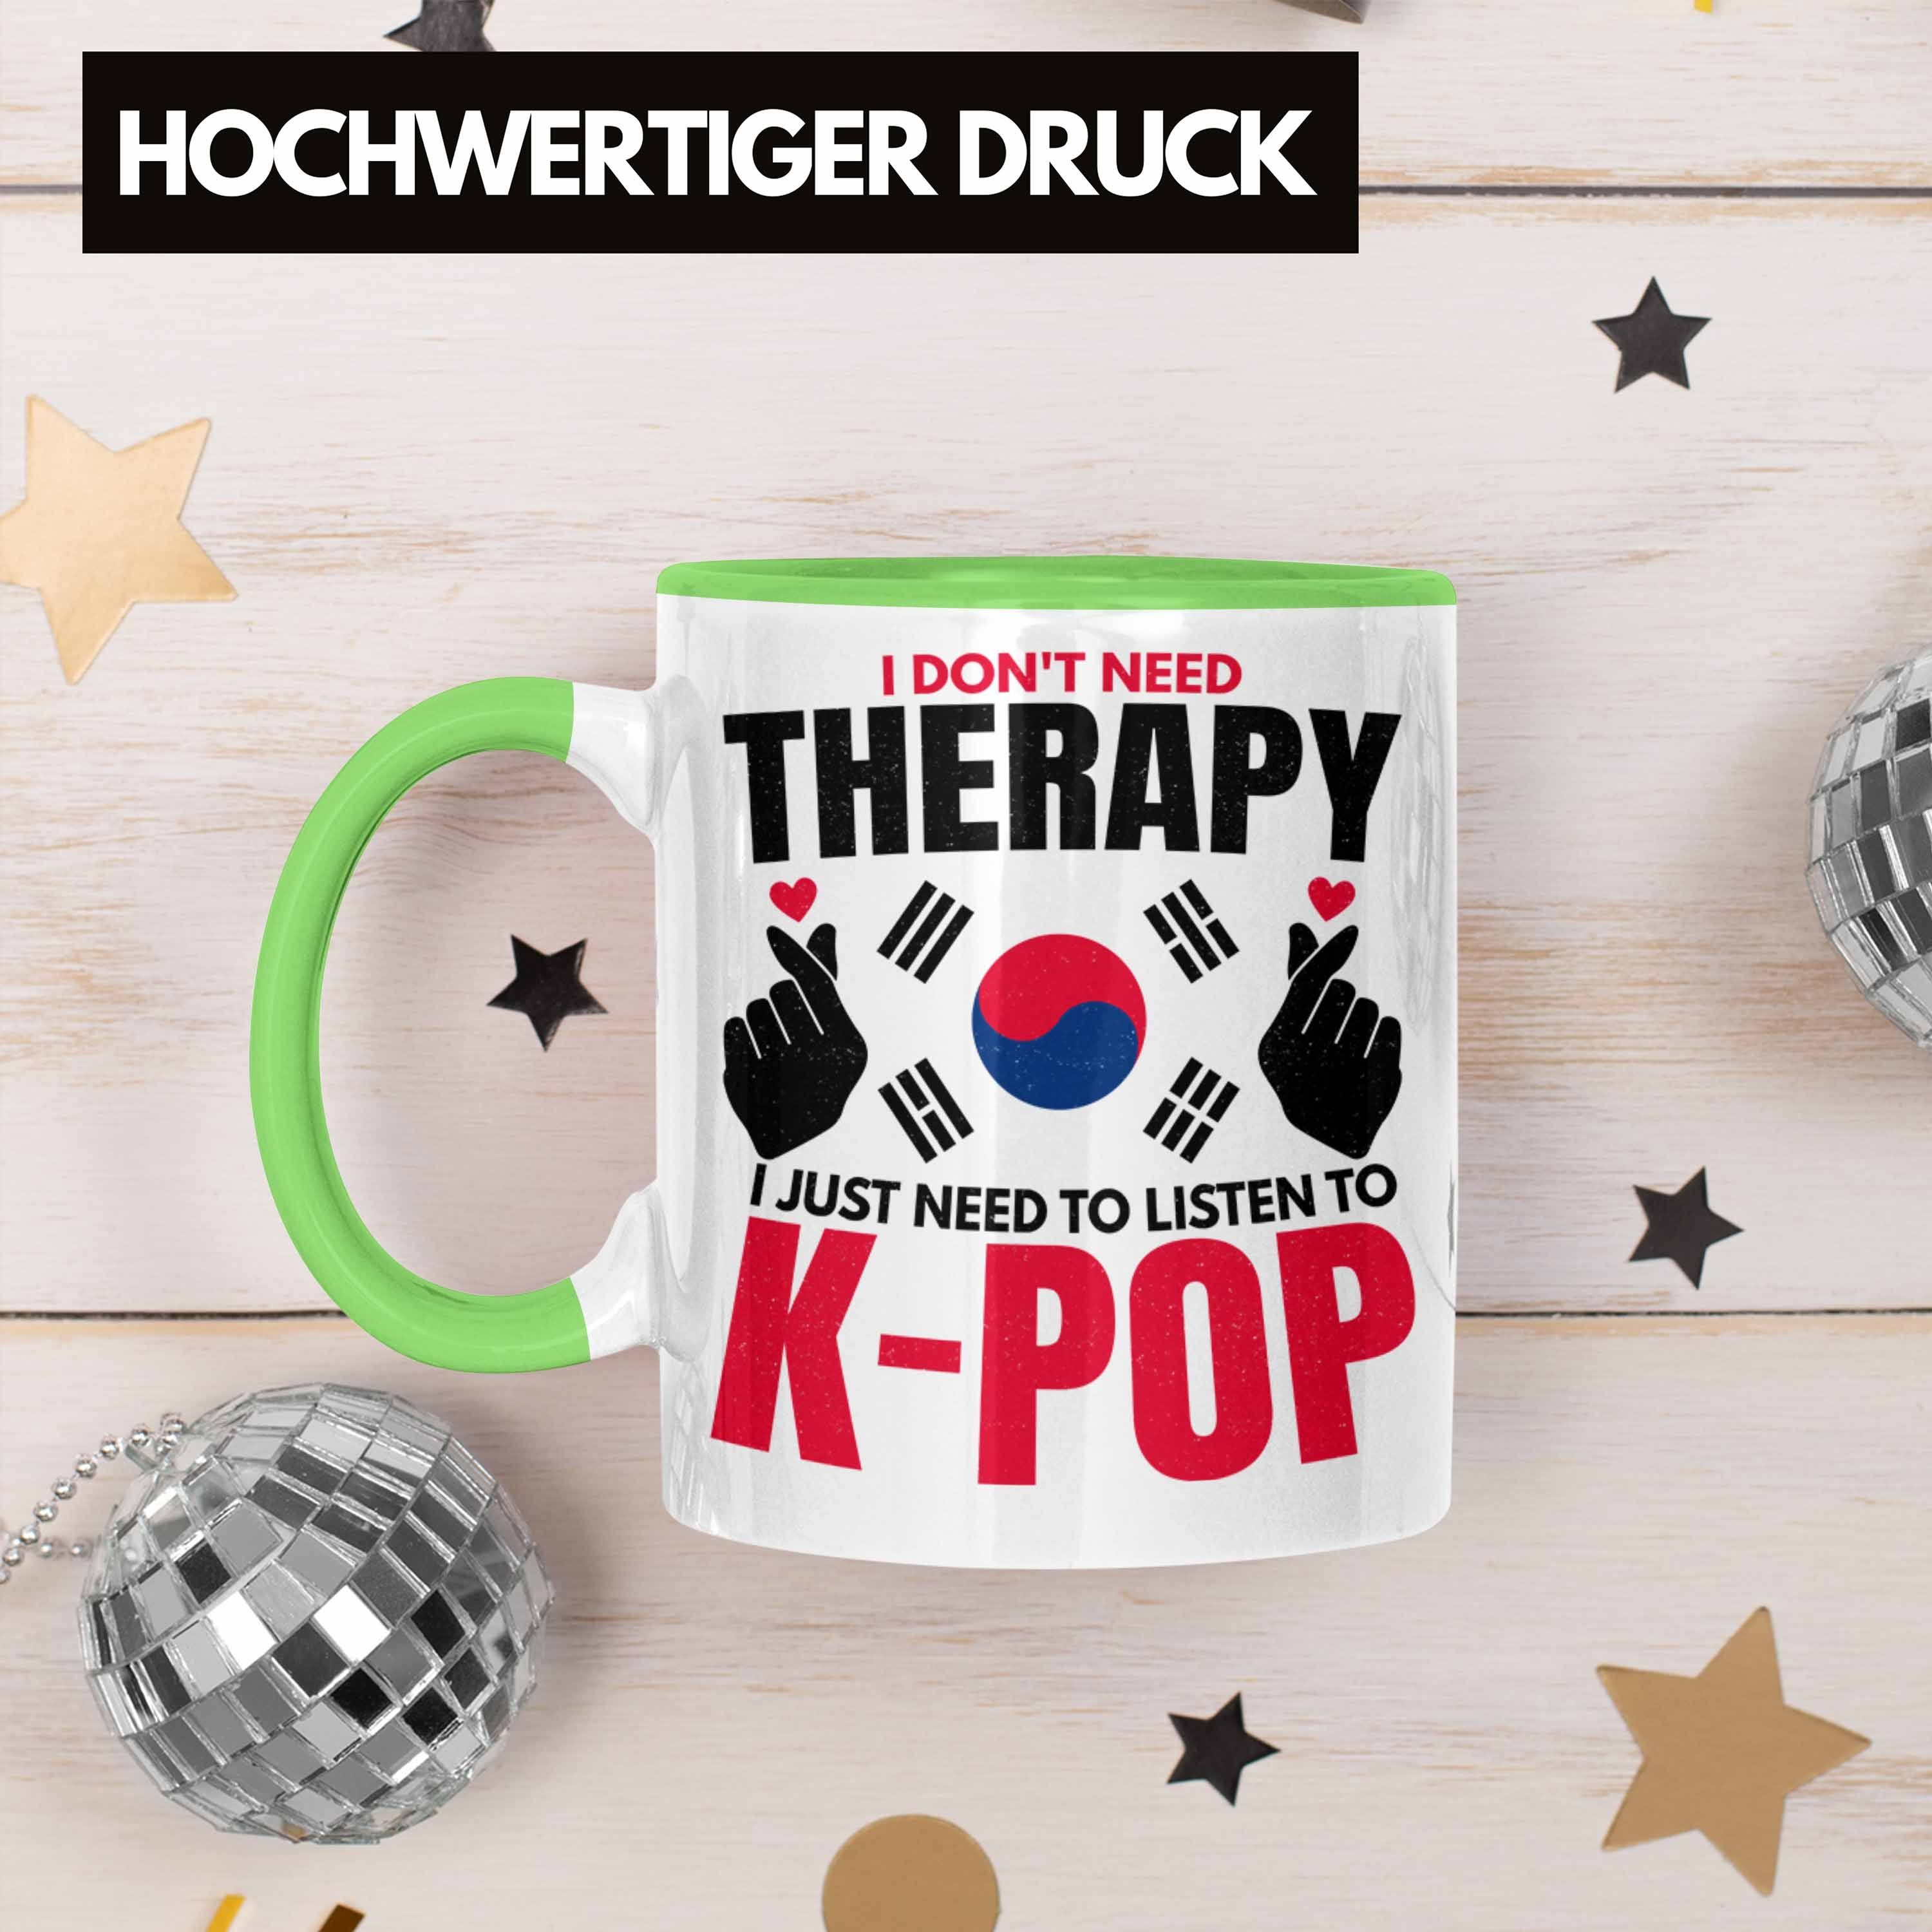 Koreal K-Pop Geschenk Trendation Kpop Style Spruch Tasse Grün Trendation - Südkorea Geschenkidee Tasse